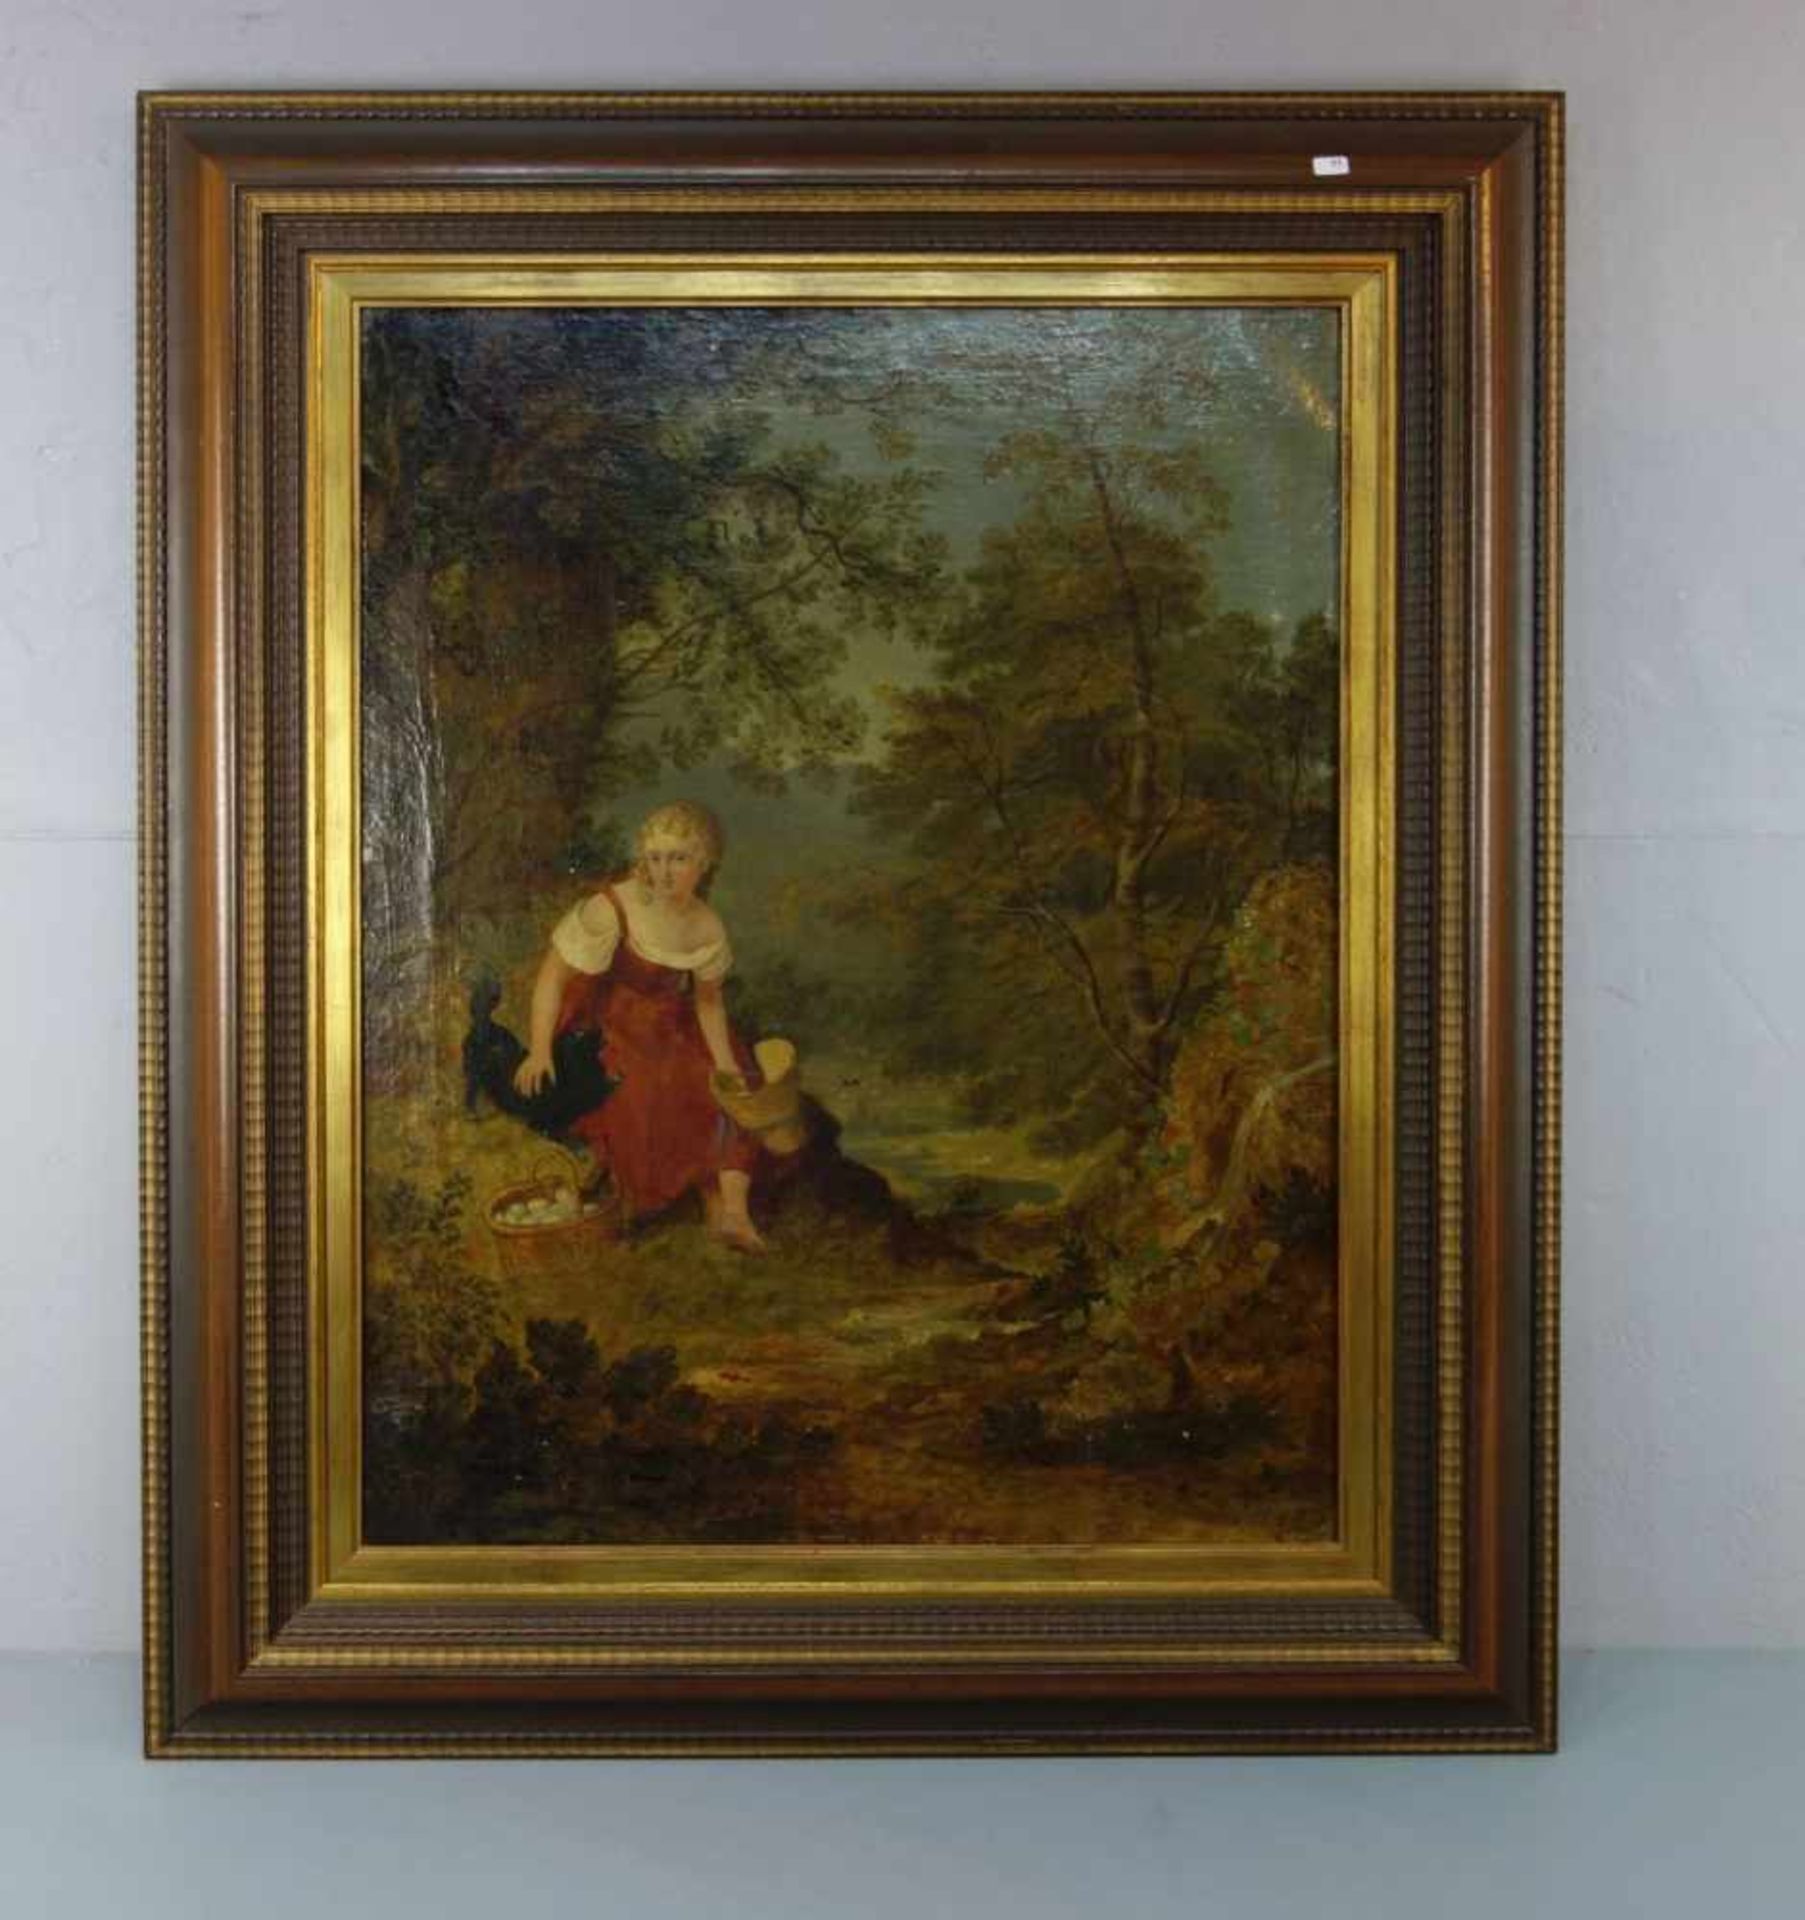 MALER DES 19. JH., Gemälde / painting: "Auf der Rast", Öl auf Leinwand / oil on canvas,